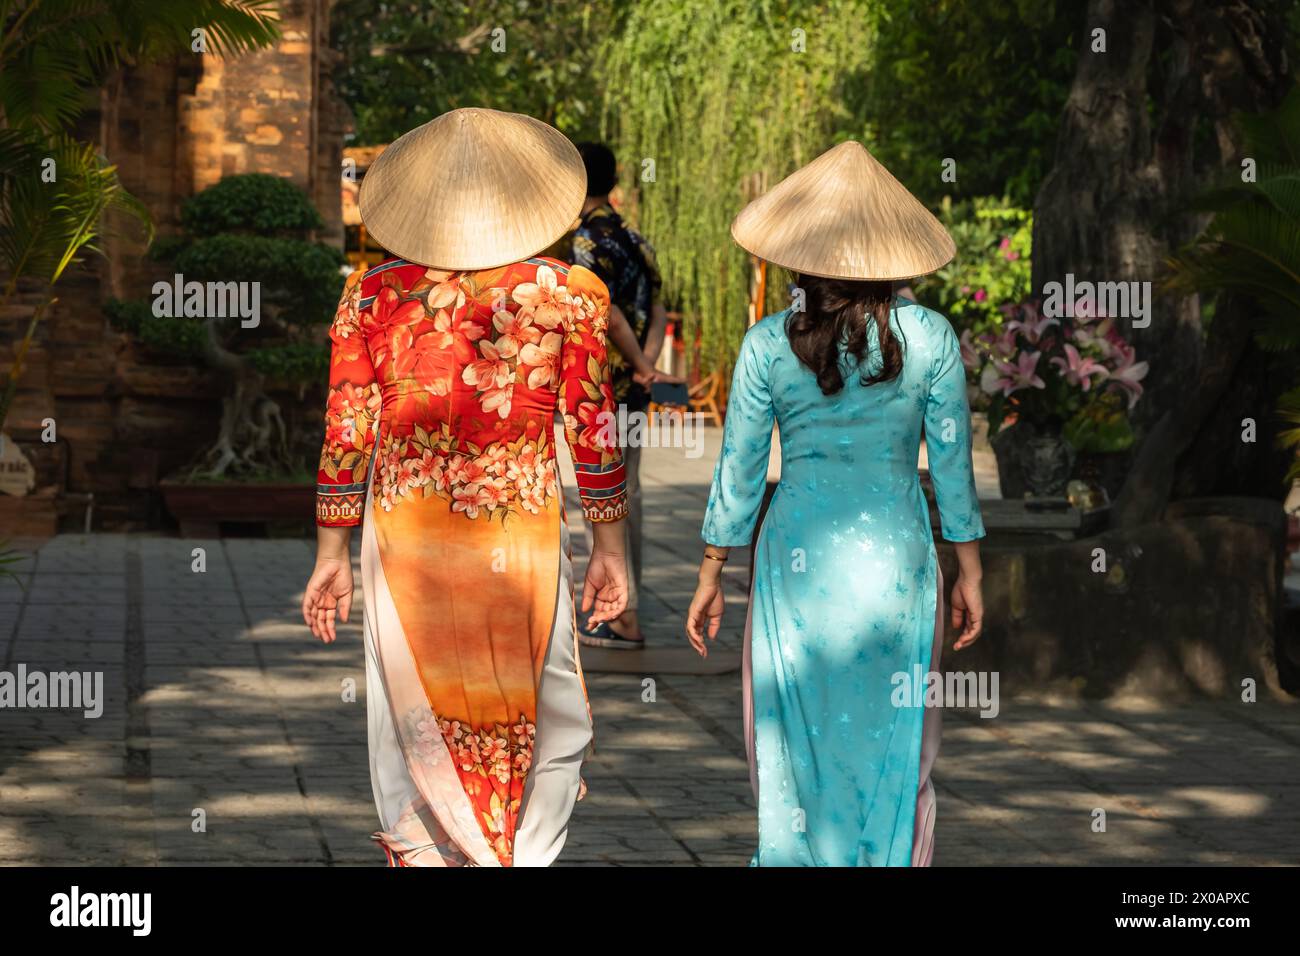 Les femmes vietnamiennes en habillement traditionnel ao dai dans le village, zone rurale Nha Trang Vietnam. La femme vietnamienne porte le chapeau conique traditionnel, connu sous le nom de Banque D'Images